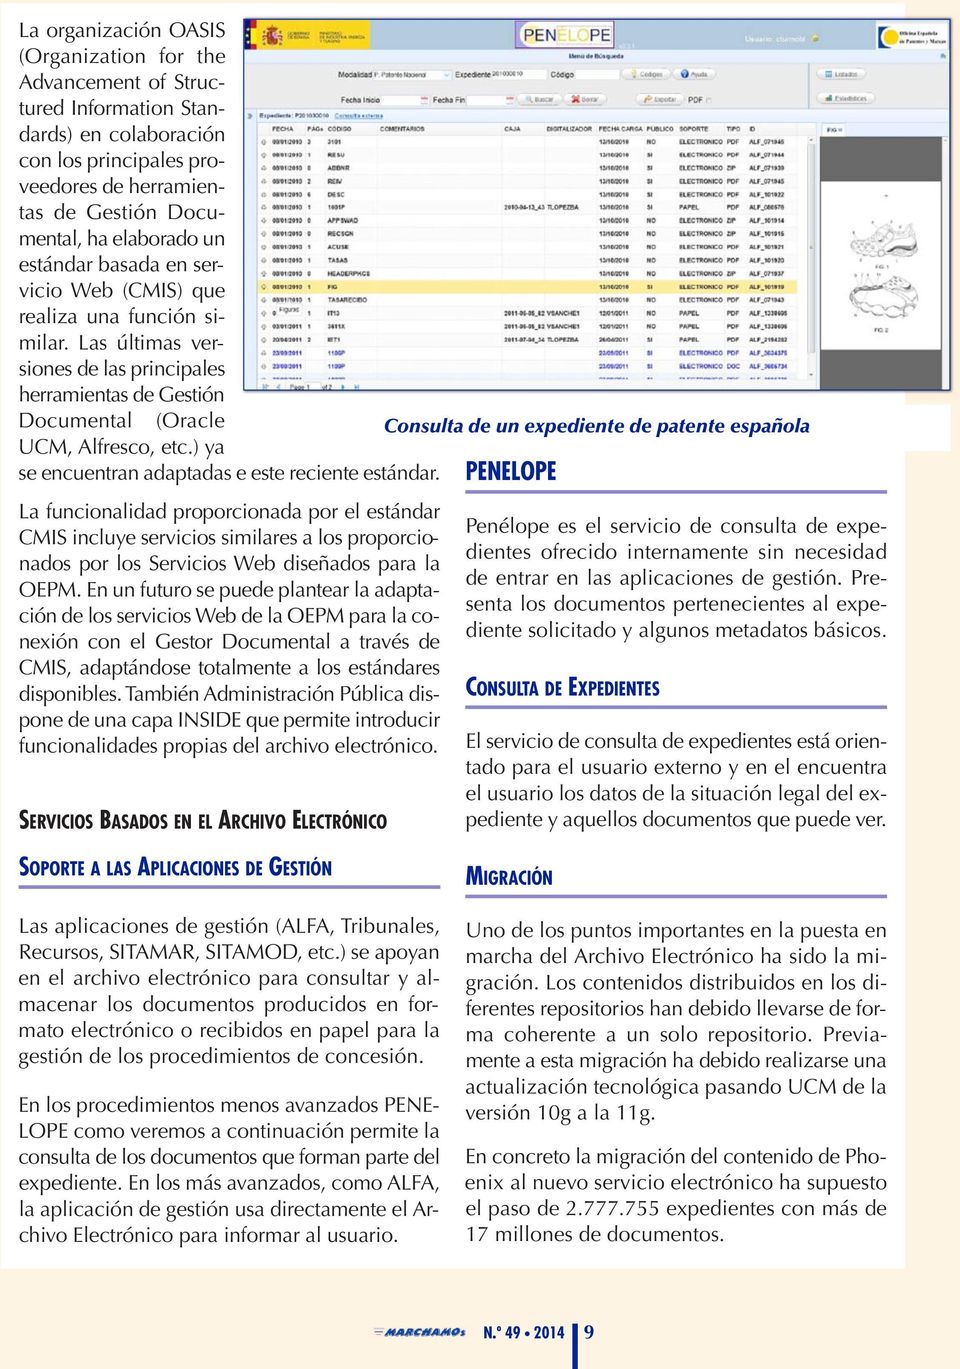 Las últimas versiones de las principales herramientas de Gestión Documental (Oracle Consulta de un expediente de patente española UCM, Alfresco, etc.